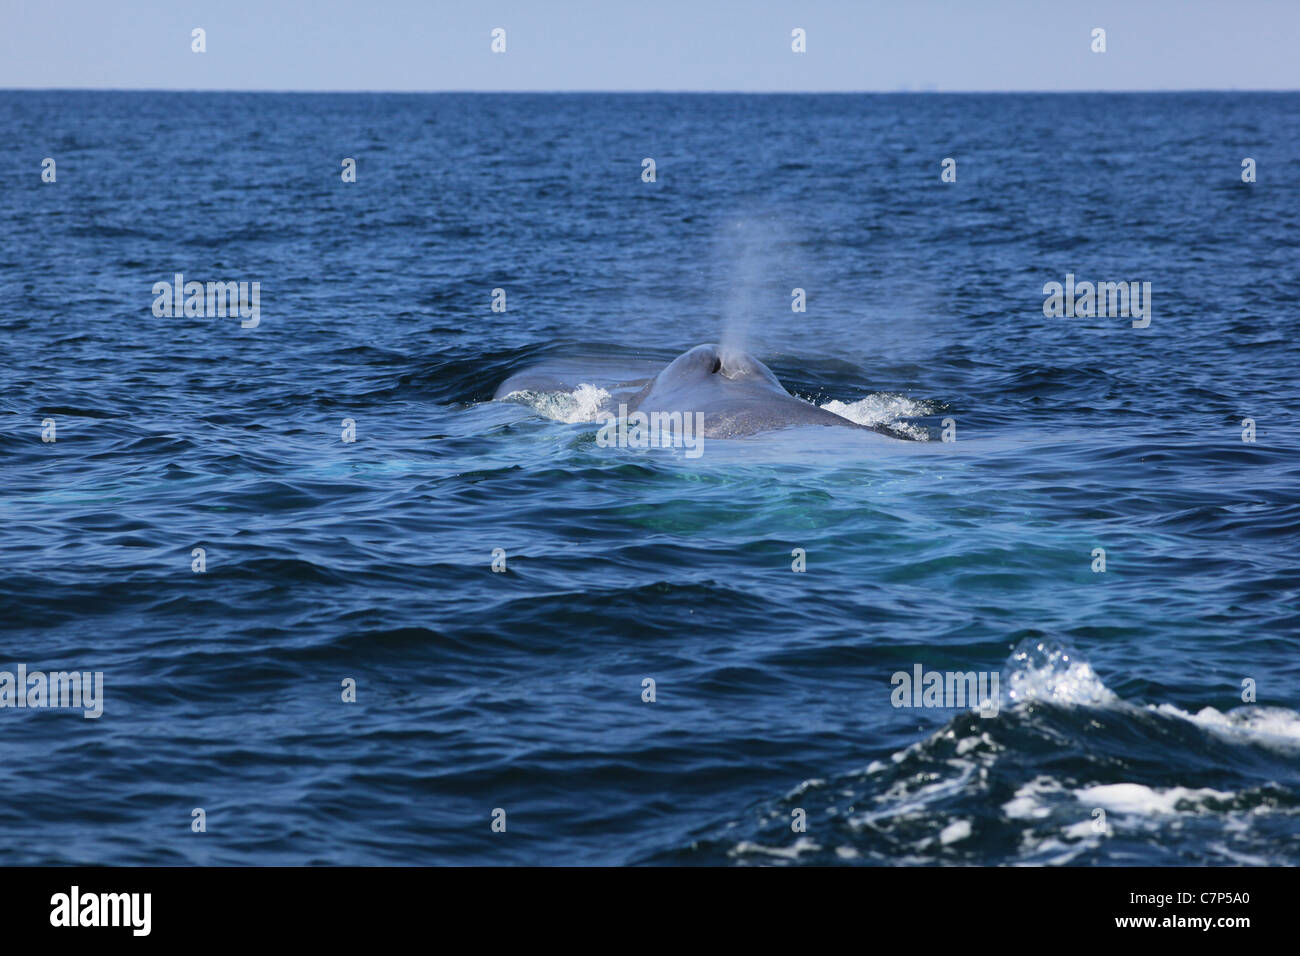 La coda di una balena blu gocciola acqua, dopo immersione in Orange County, California Foto Stock